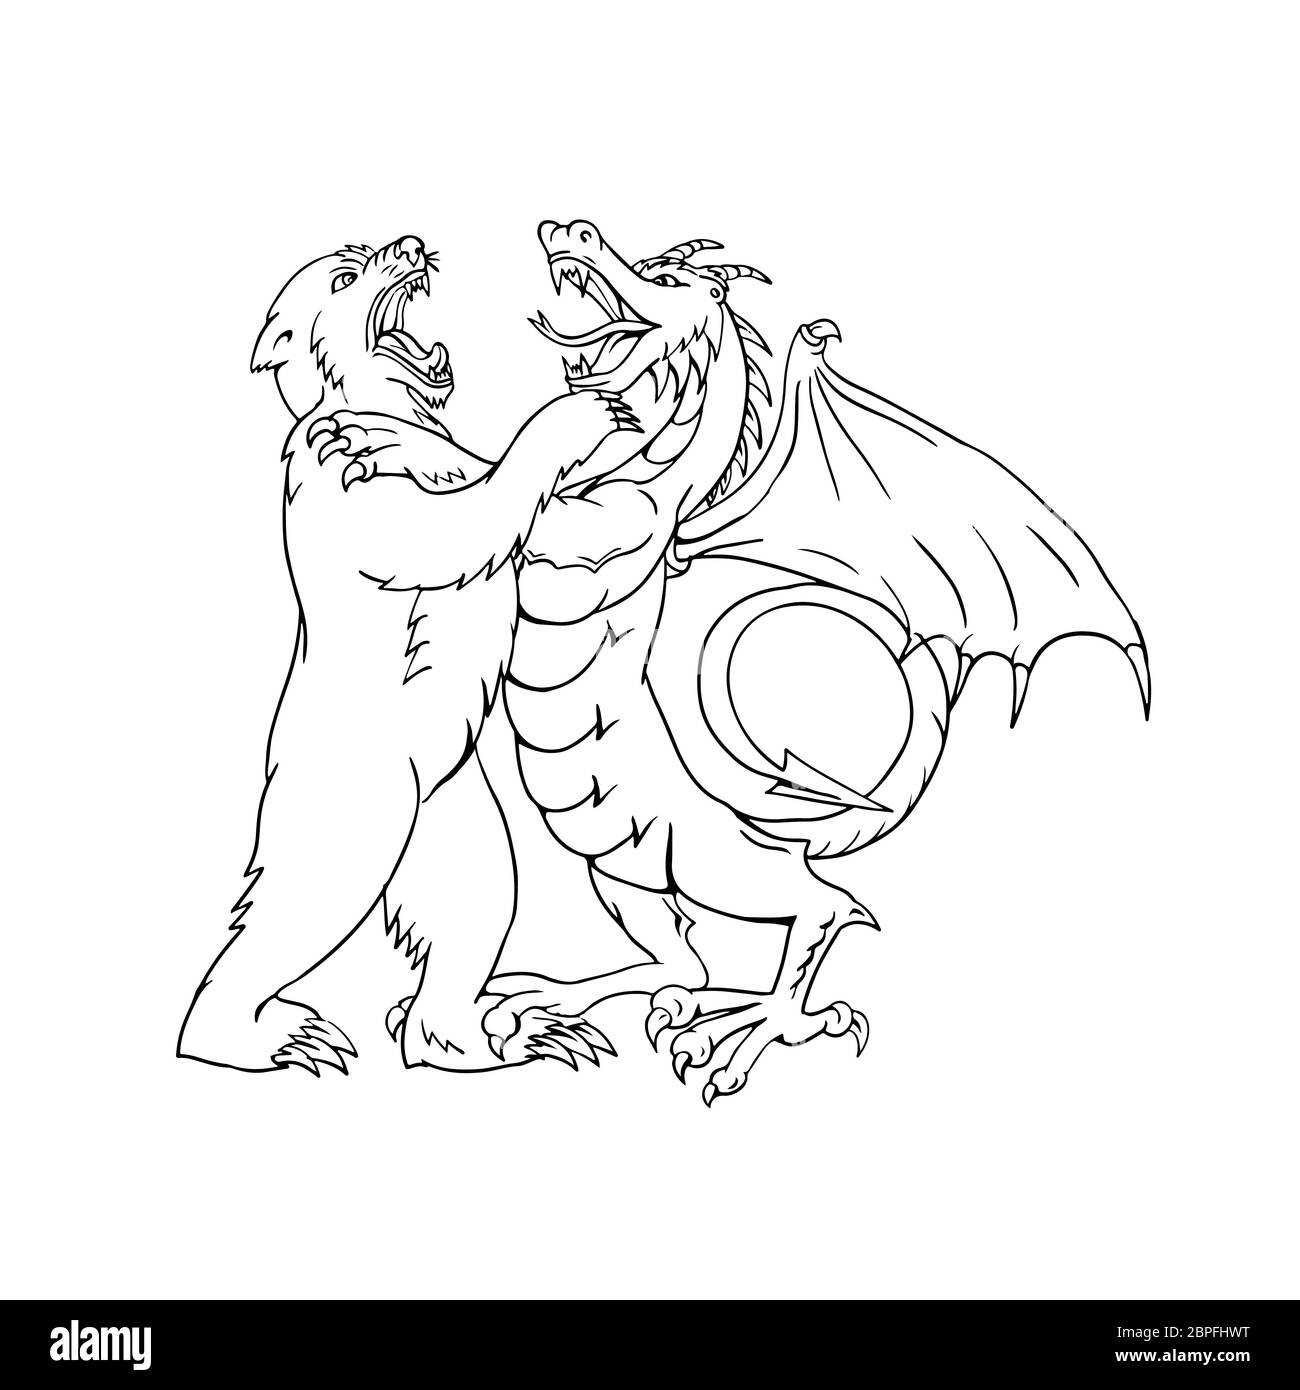 Croquis dessin illustration de style d'un ours lutte, joutes, combat ou dans la lutte contre un dragon chinois isolé sur fond blanc en noir et Banque D'Images